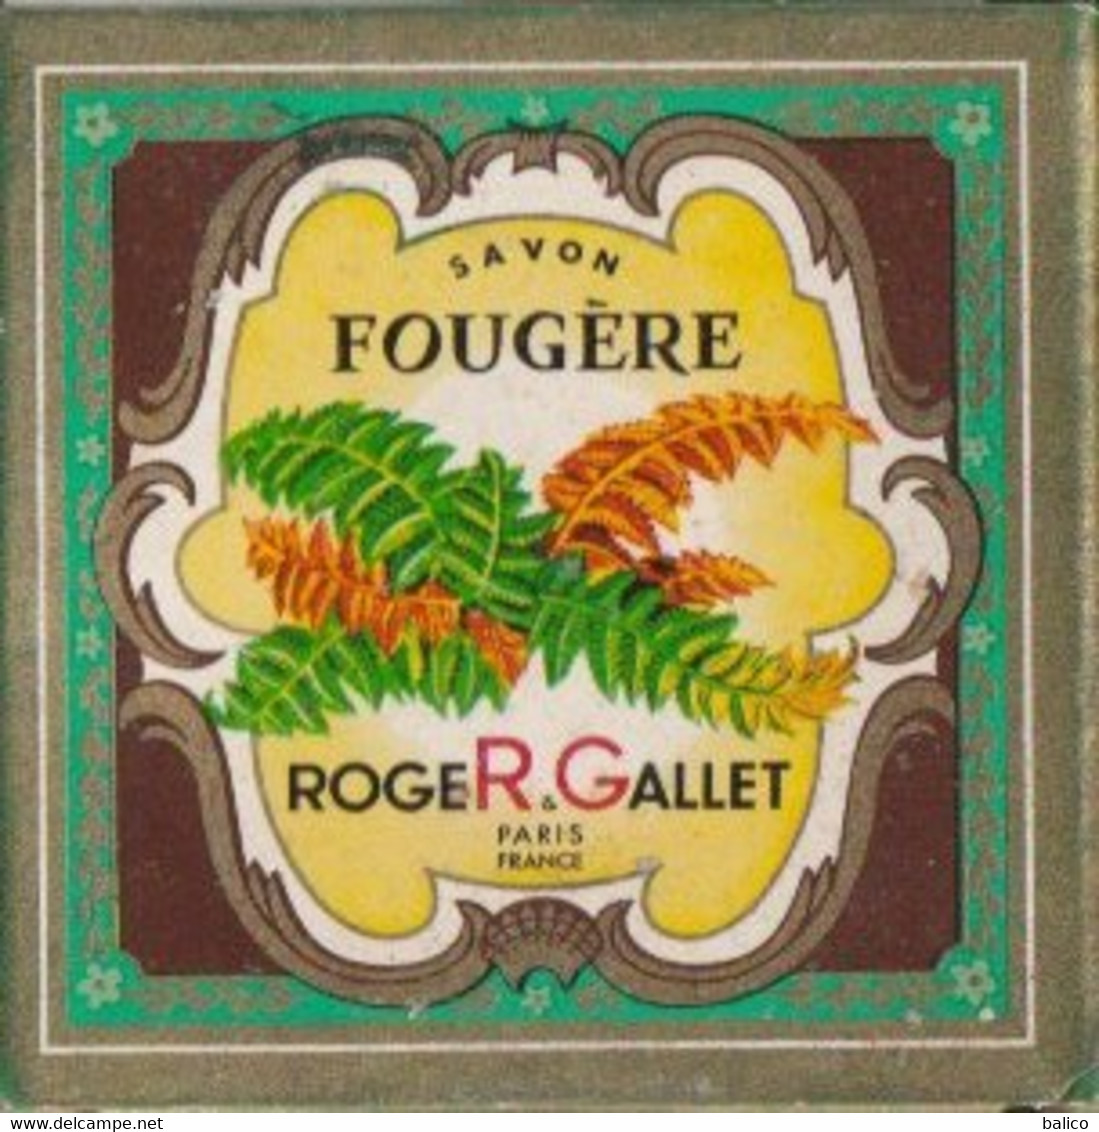 Échantillon De Savons De Roger Gallet, Paris  ( Boite Ancienne  Et Savons Neuf ) - Productos De Belleza